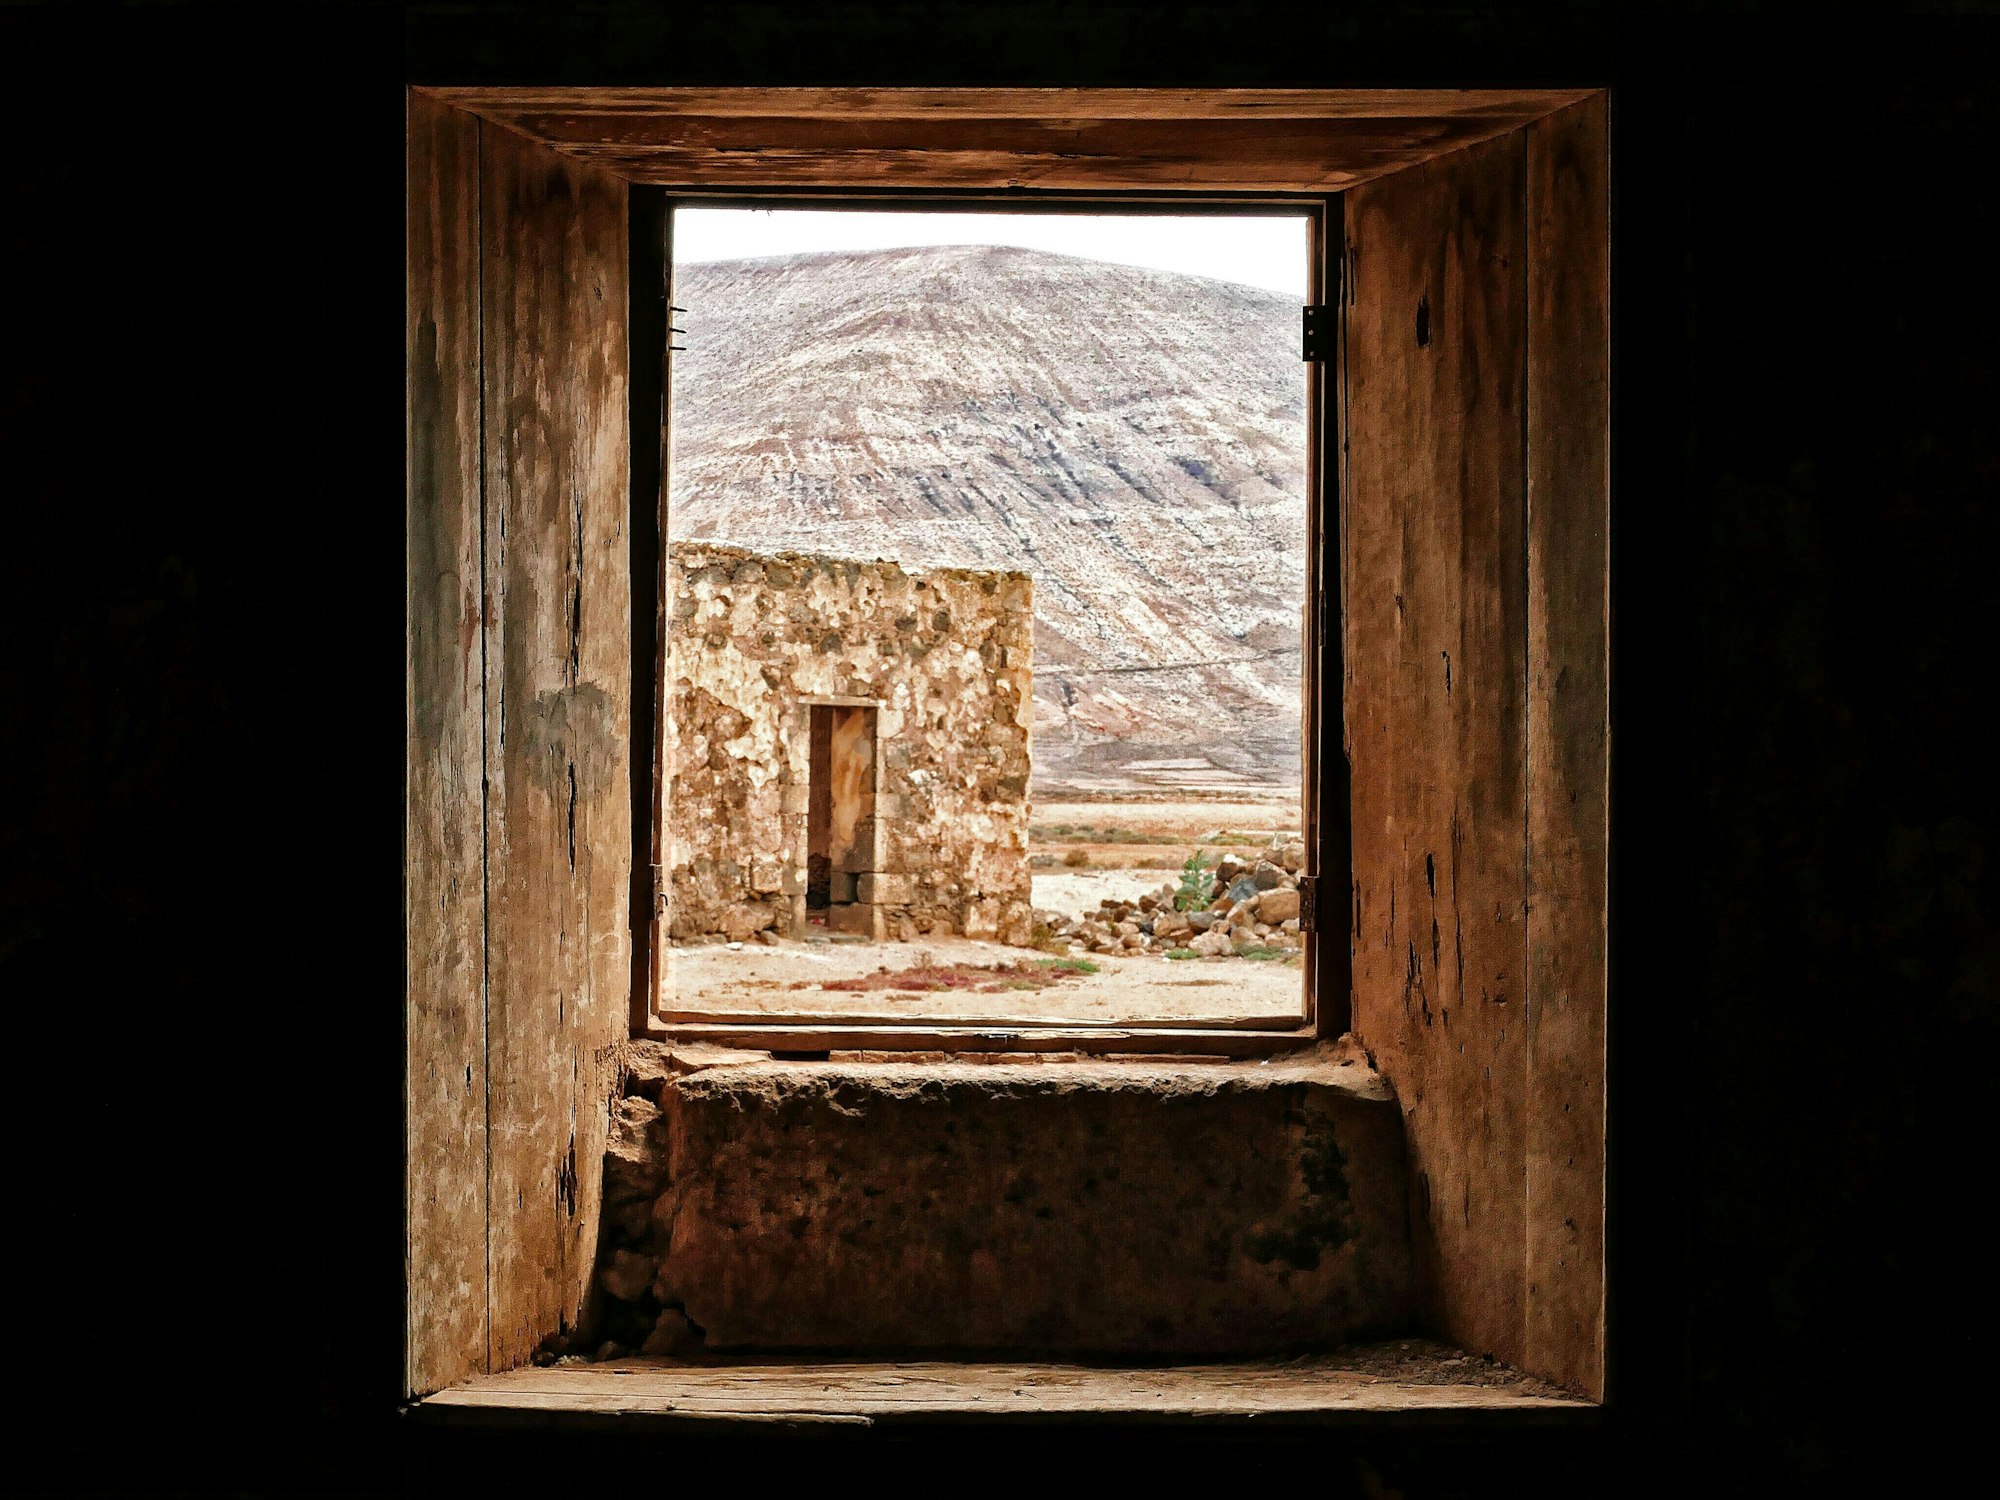 Das Bild entstand auf Fuerteventura. Es zeigt den Blick durch ein Fenster auf ein verlassenes Gebäude und einen Berg.